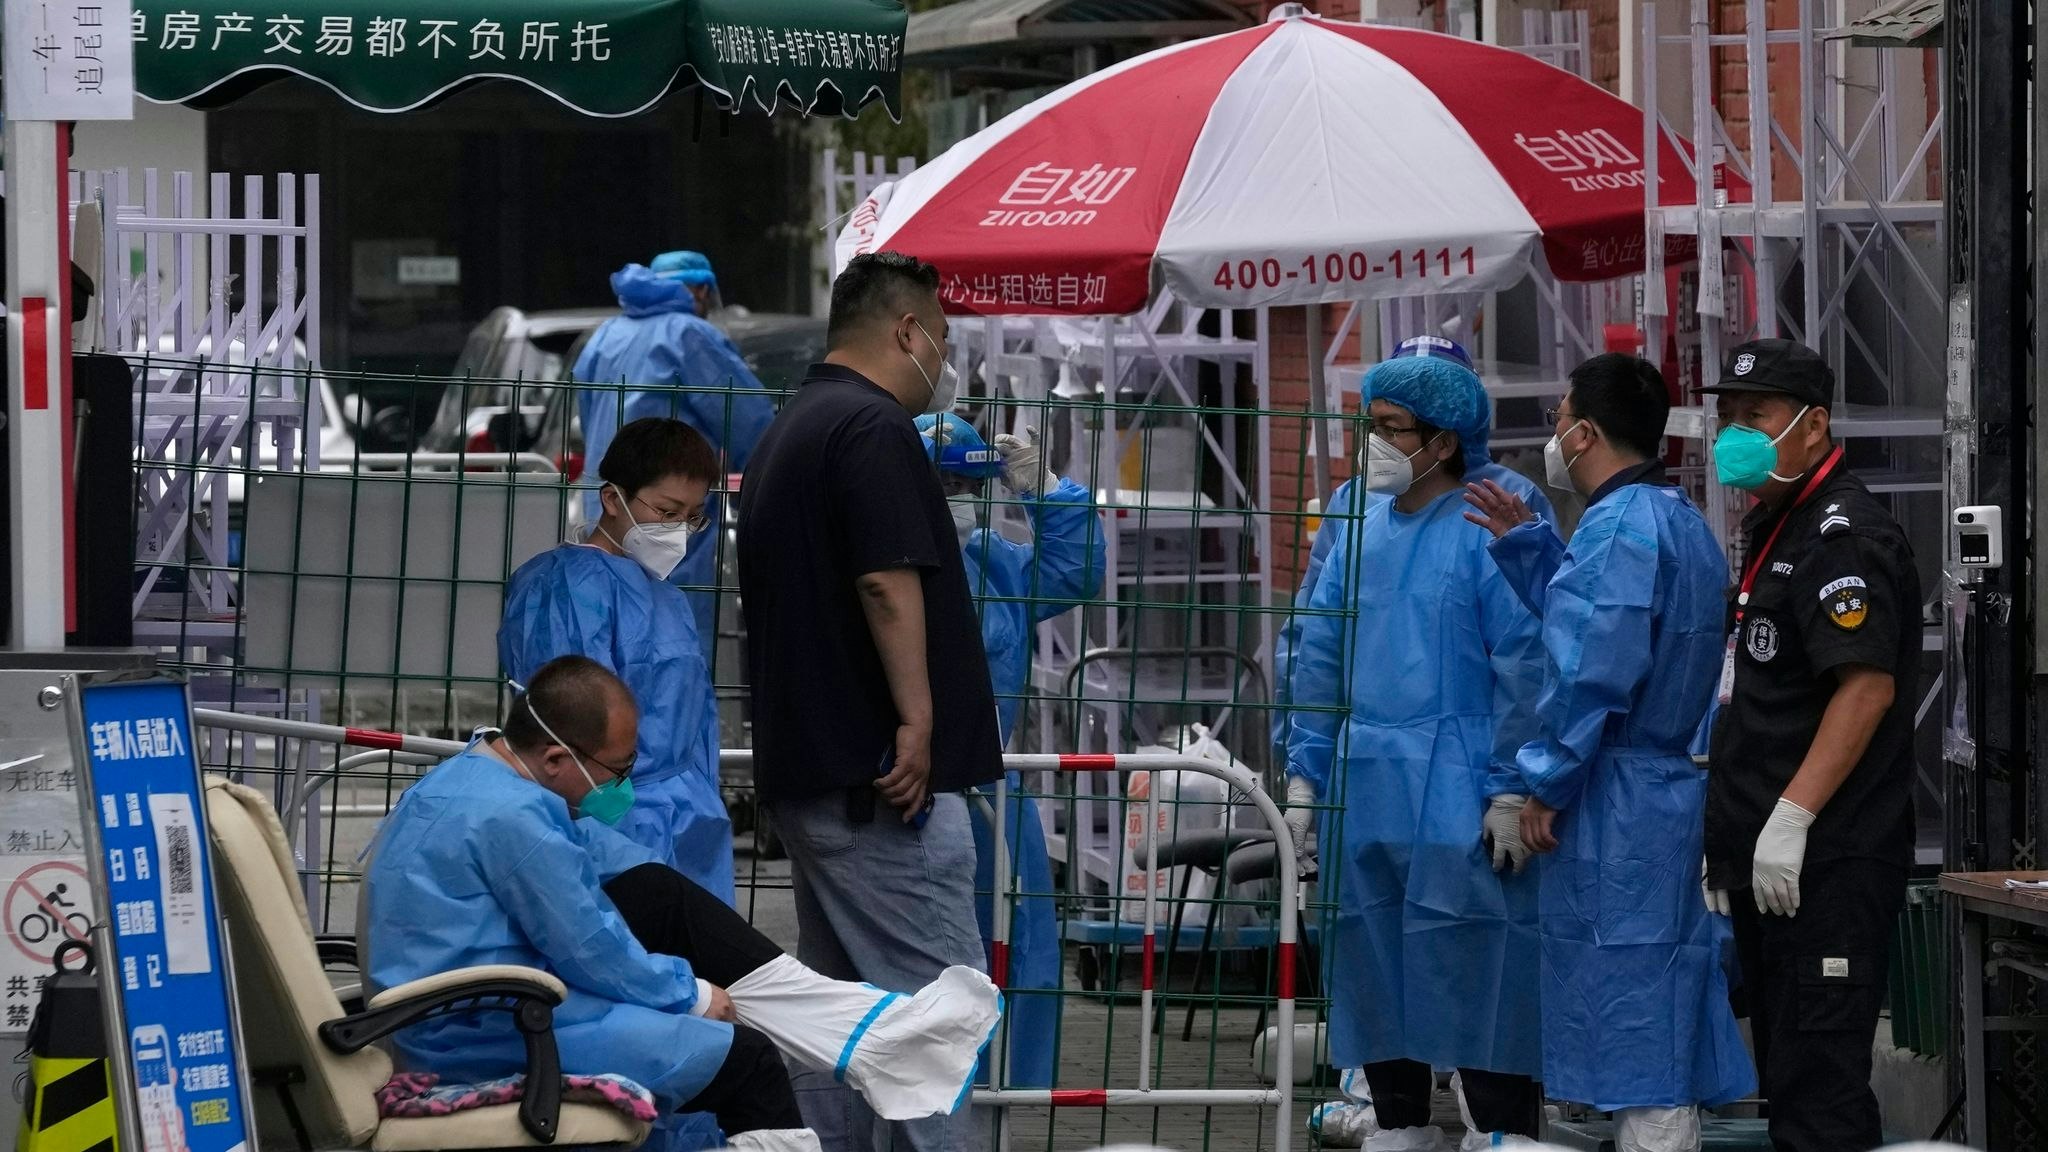 Medizinisches Personal steht am Eingang einer abgeriegelten Gemeinde in Peking: Auf der Suche nach dem Ursprung des Coronavirus Sars-CoV-2 kommt Wissenschaftlern zufolge wahrscheinlich ein Markt in Wuhan in Betracht. Foto: dpa/NG Han Guan